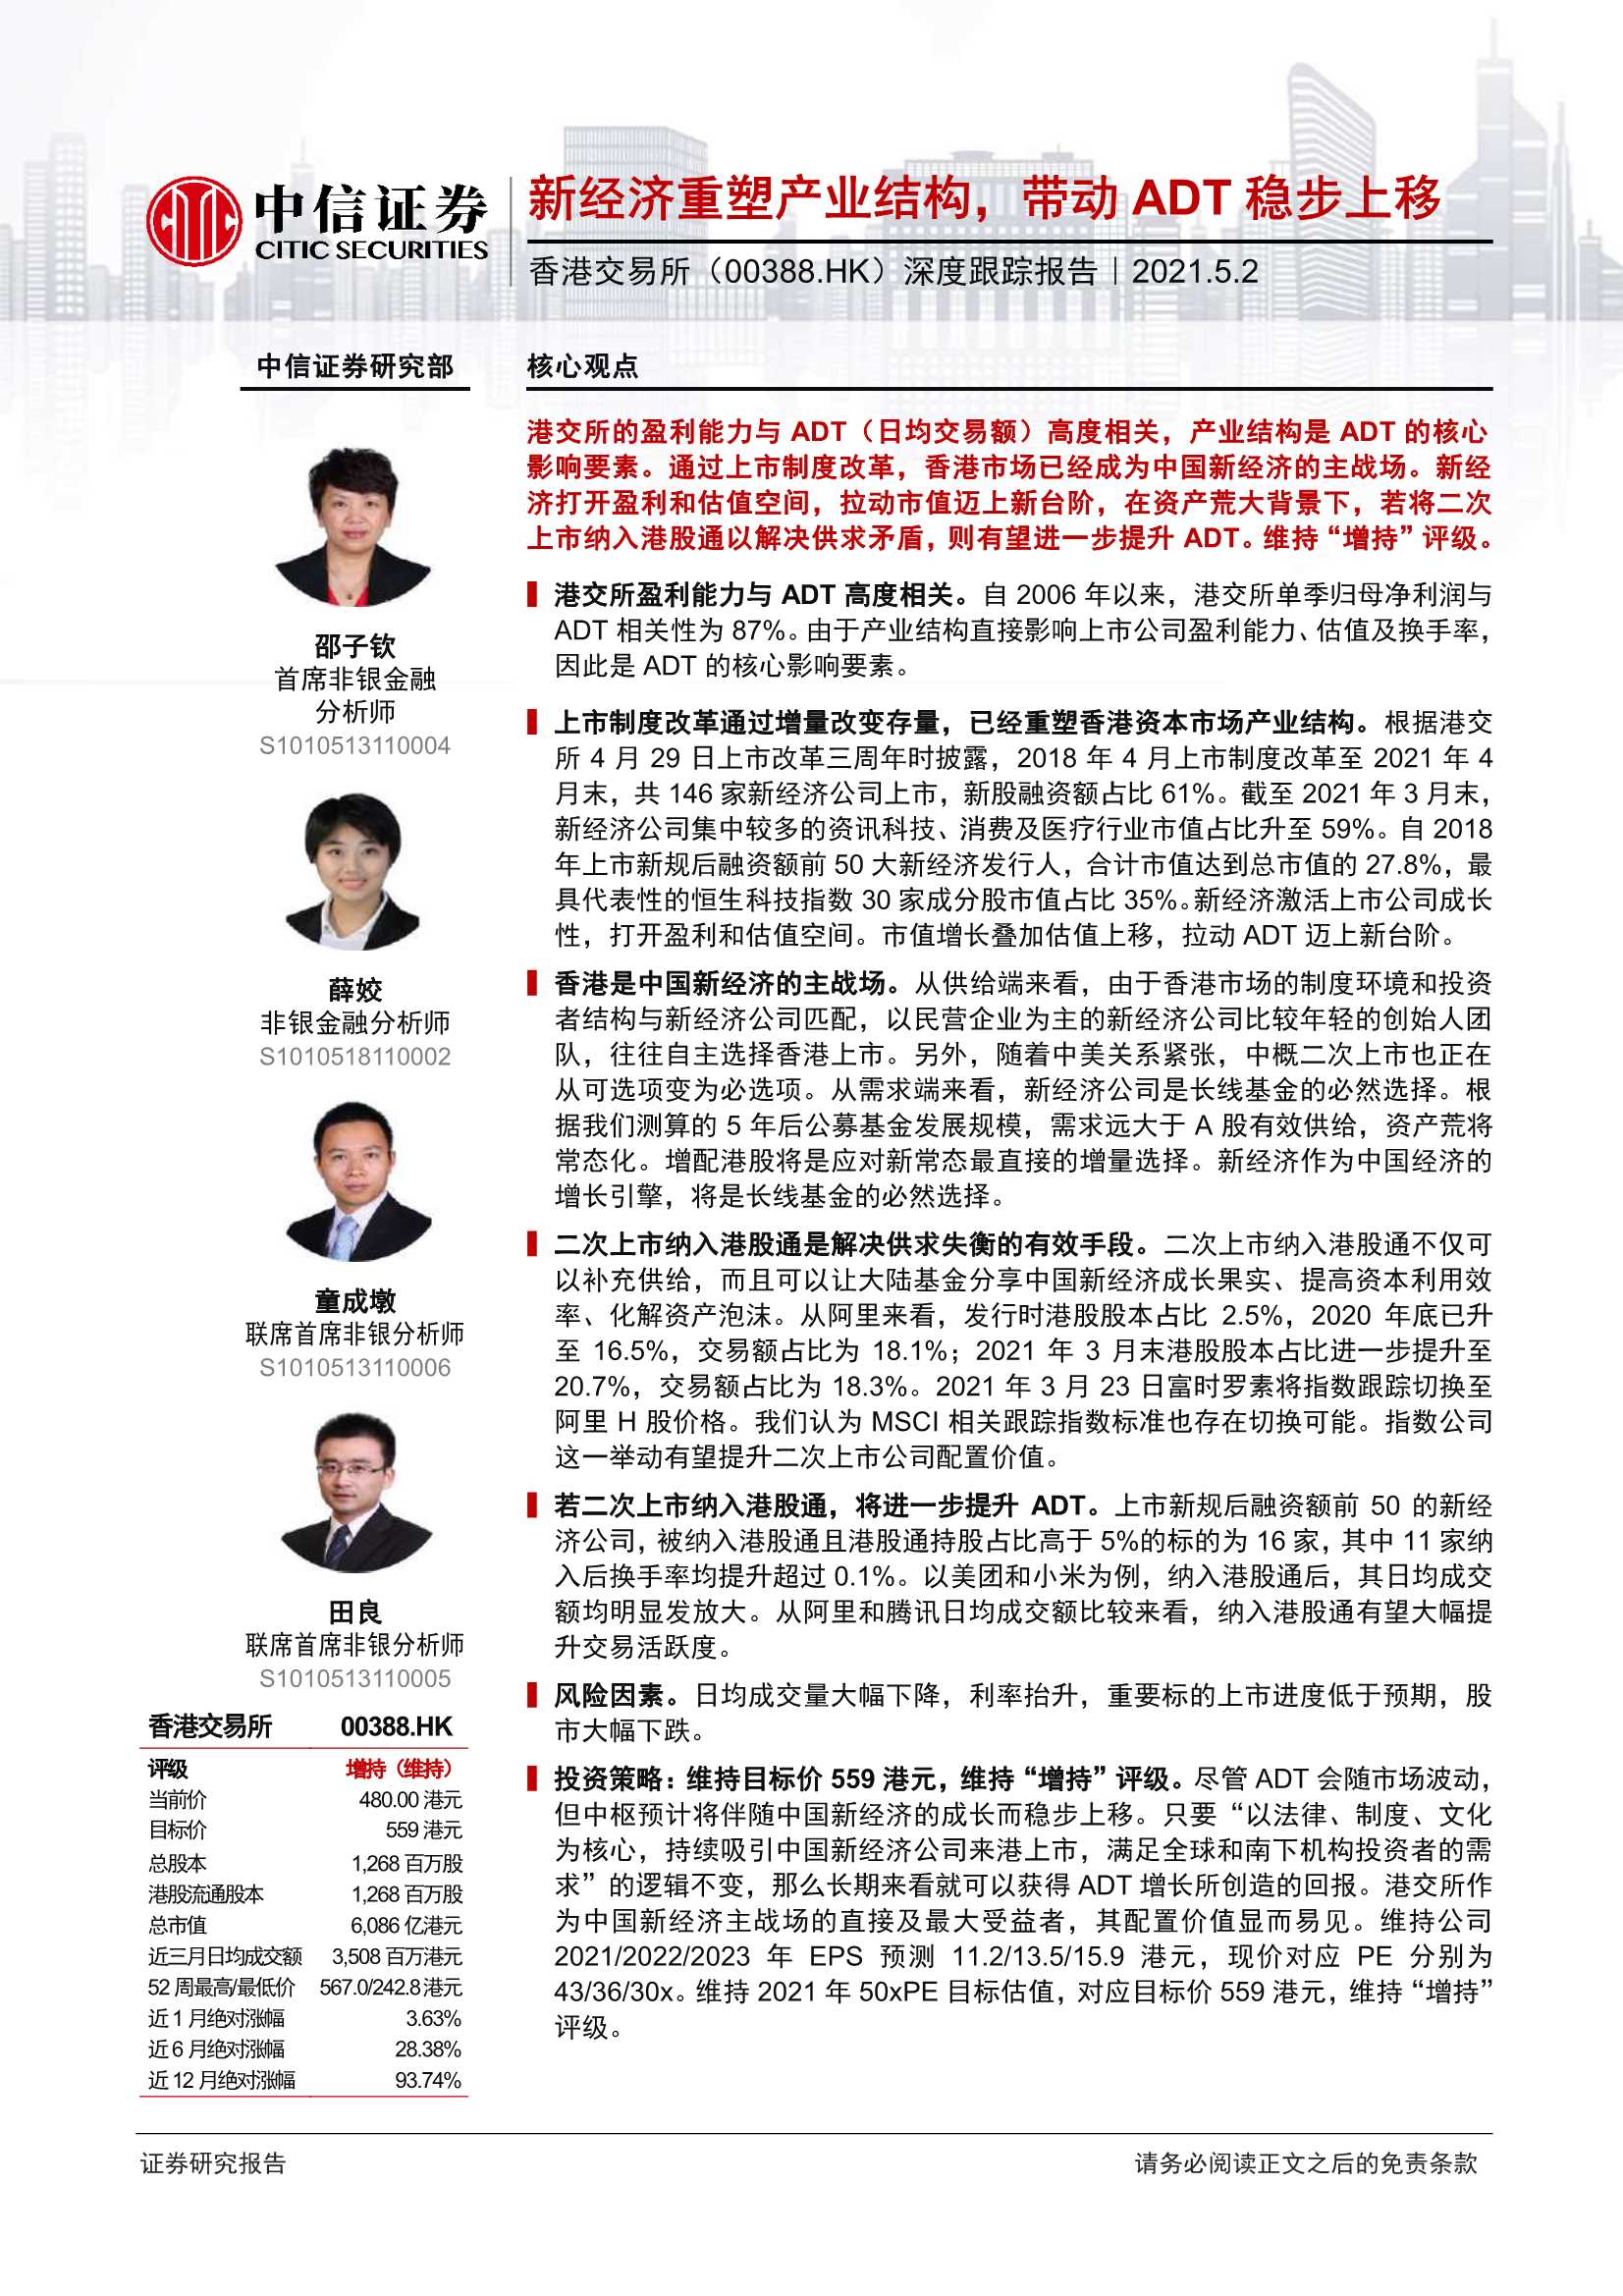 中信证券-香港交易所（0388.HK）：深度跟踪报告：新经济重塑产业结构，带动ADT稳步上移-20210502-32页